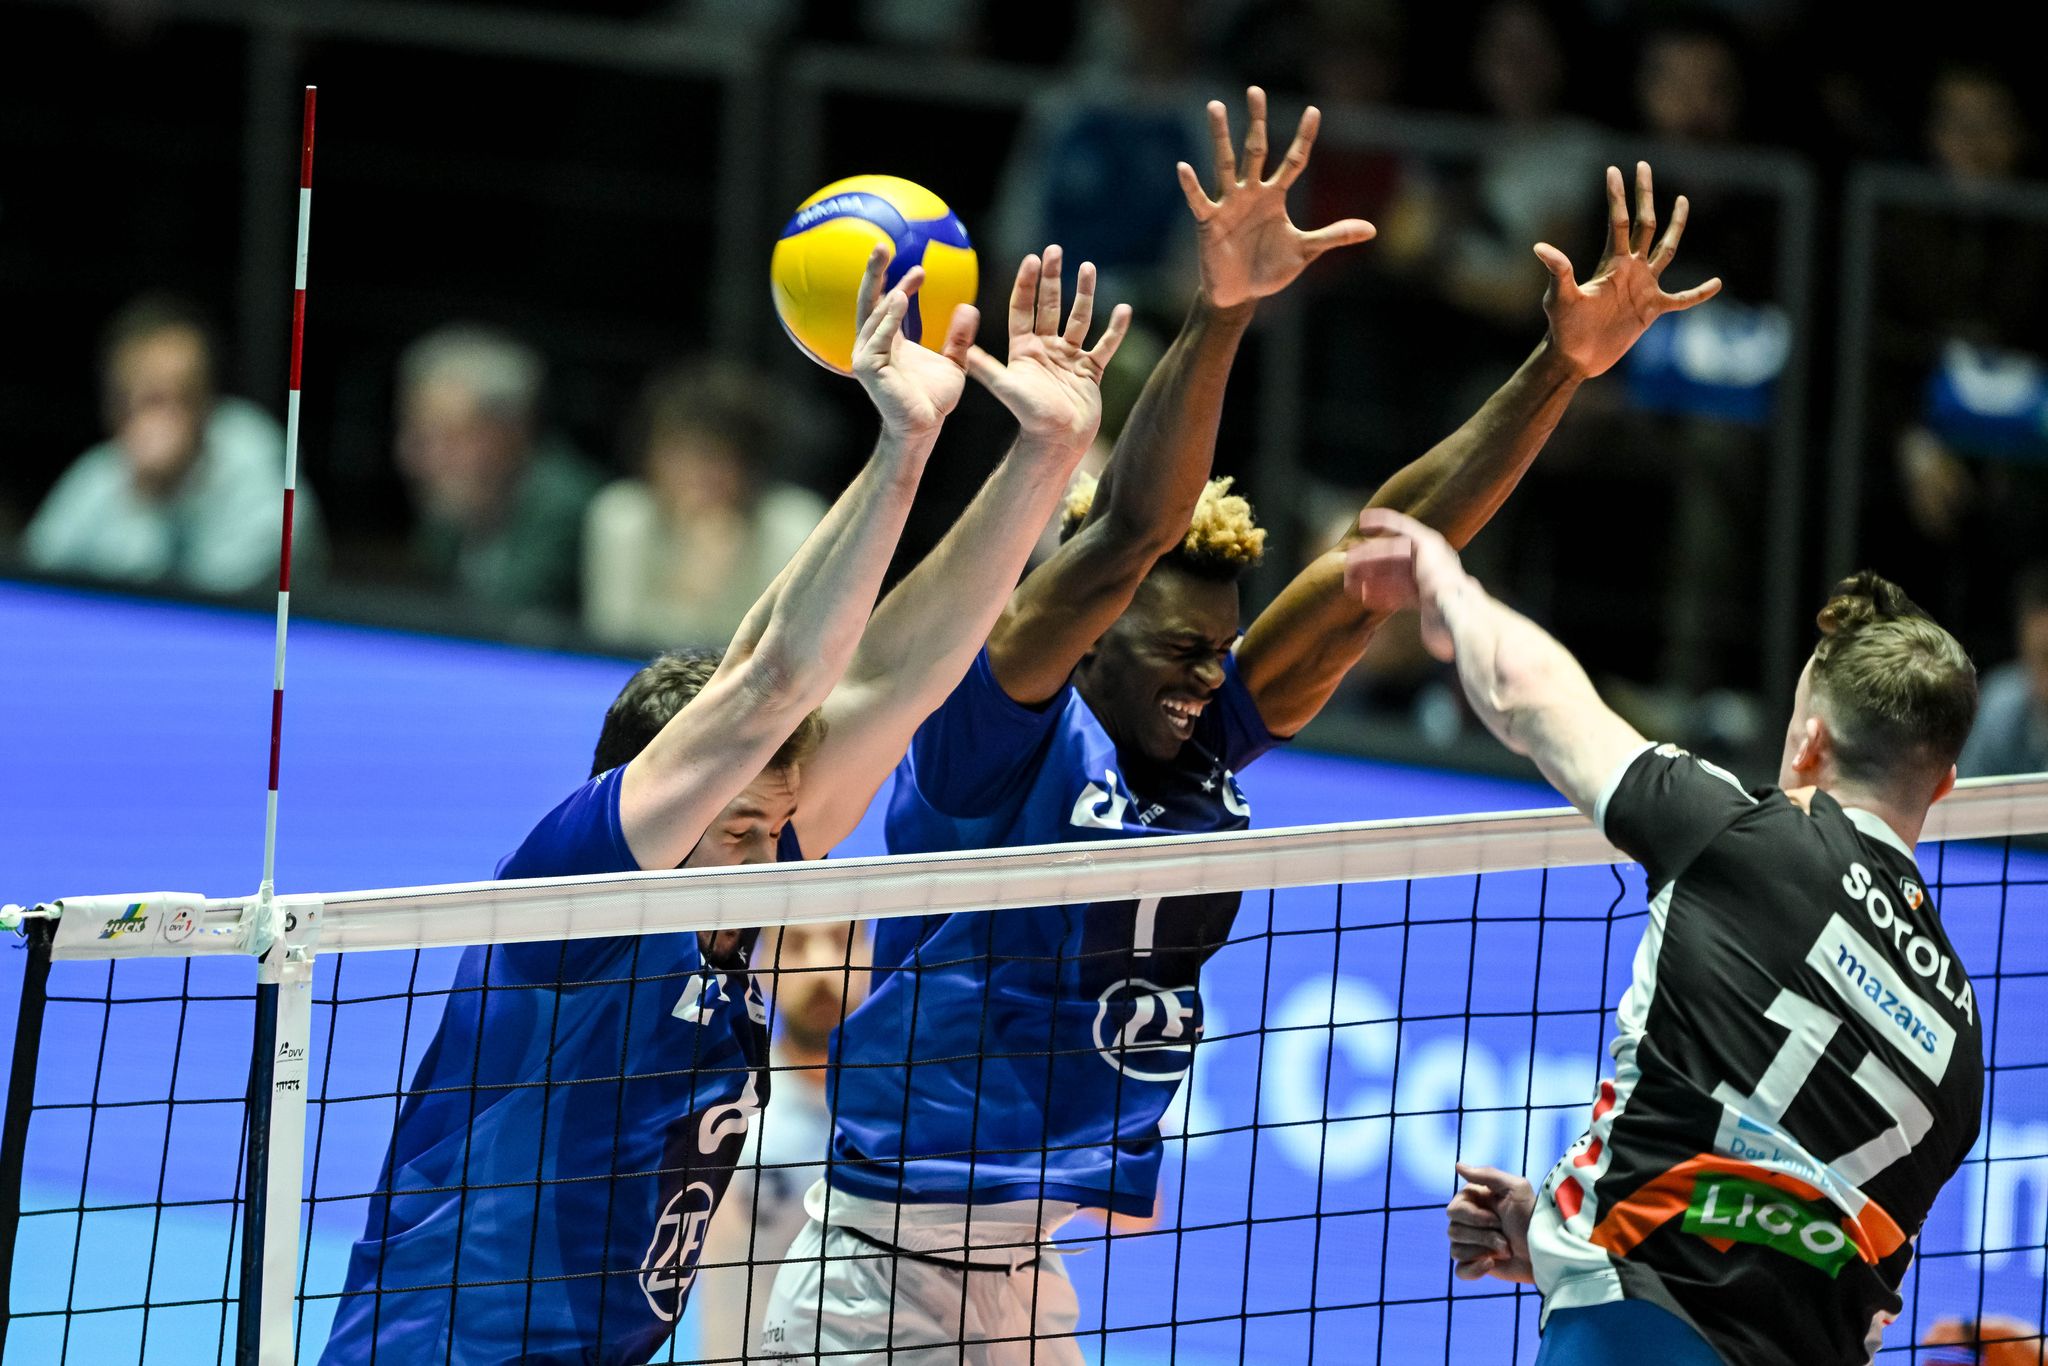 friedrichshafen vergibt zweite chance auf volleyball-titel